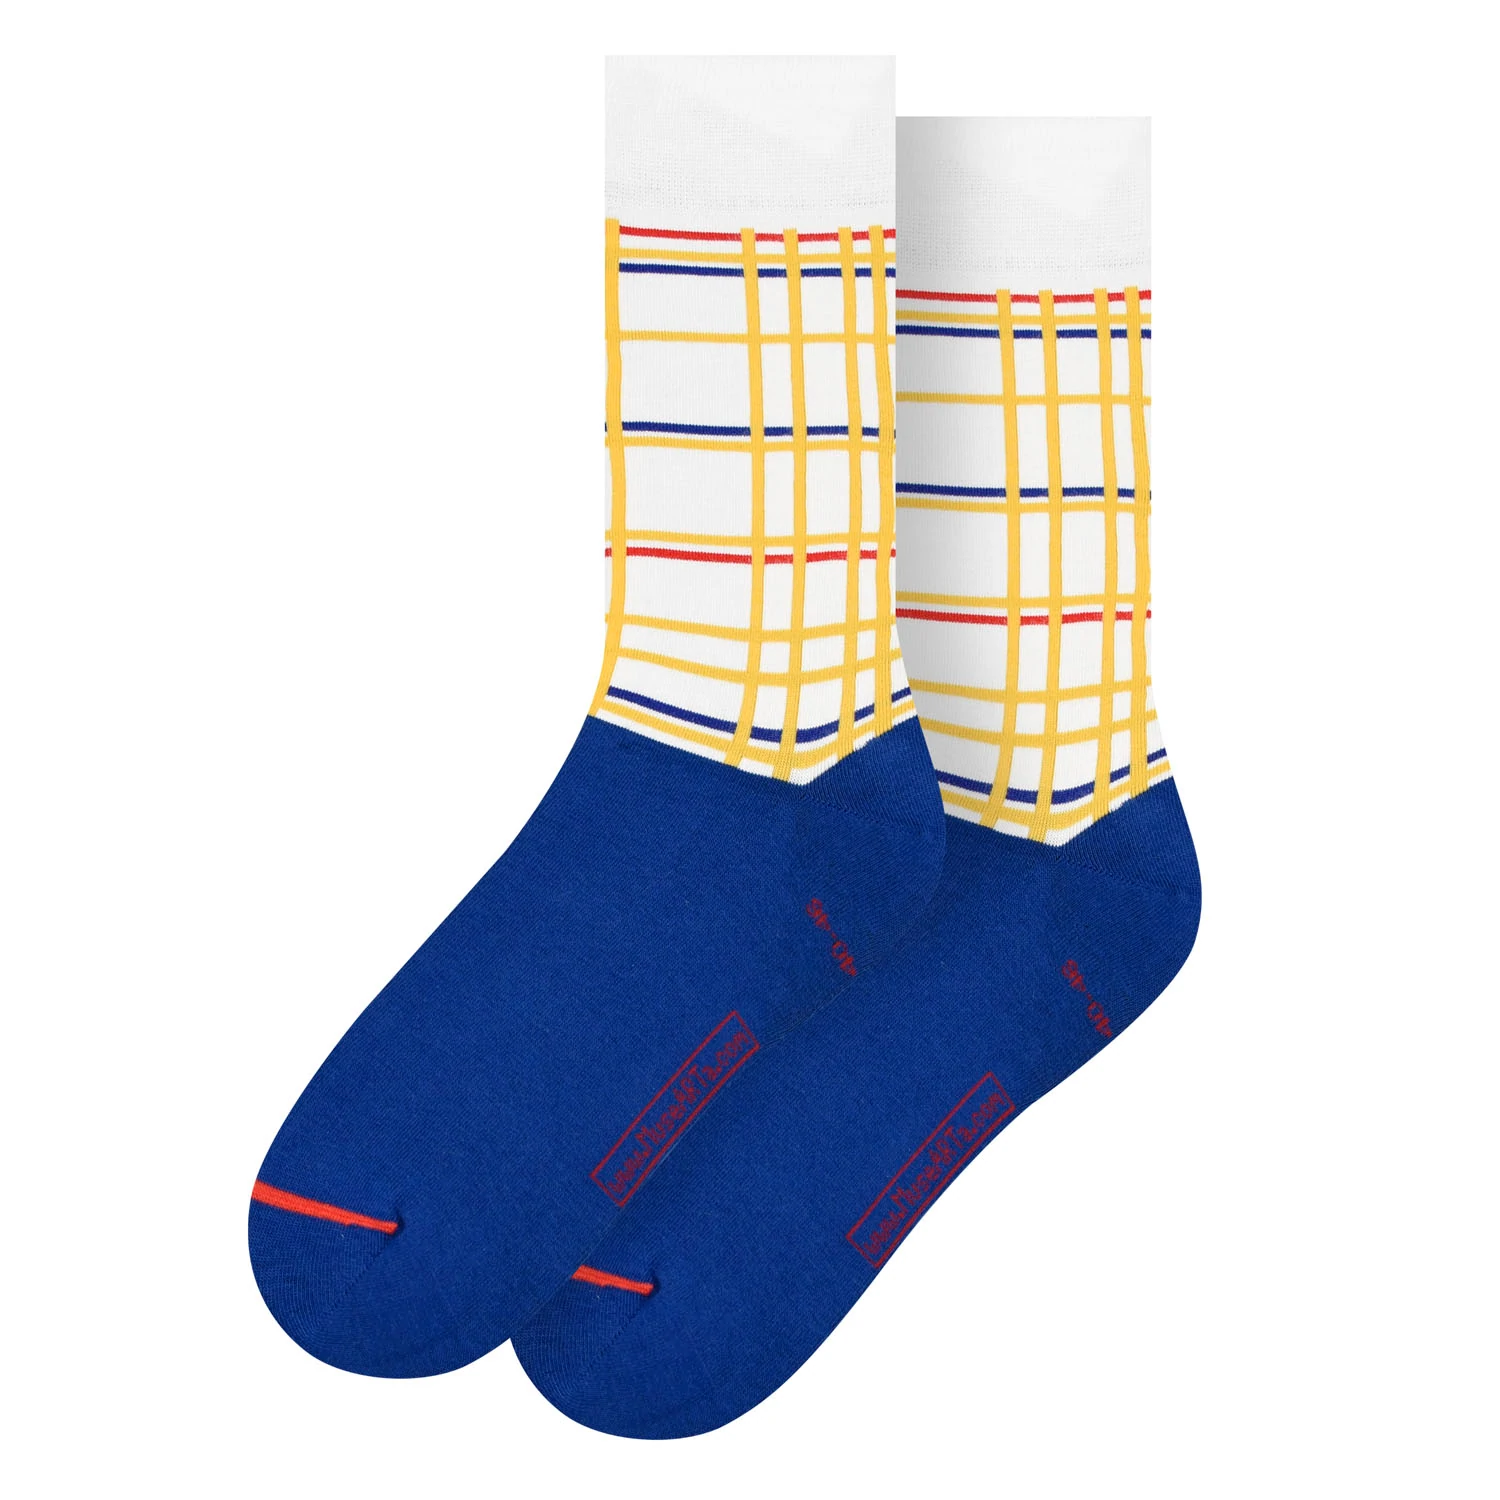 Socken 40-46 / Piet Mondrian - New York City I / Socks